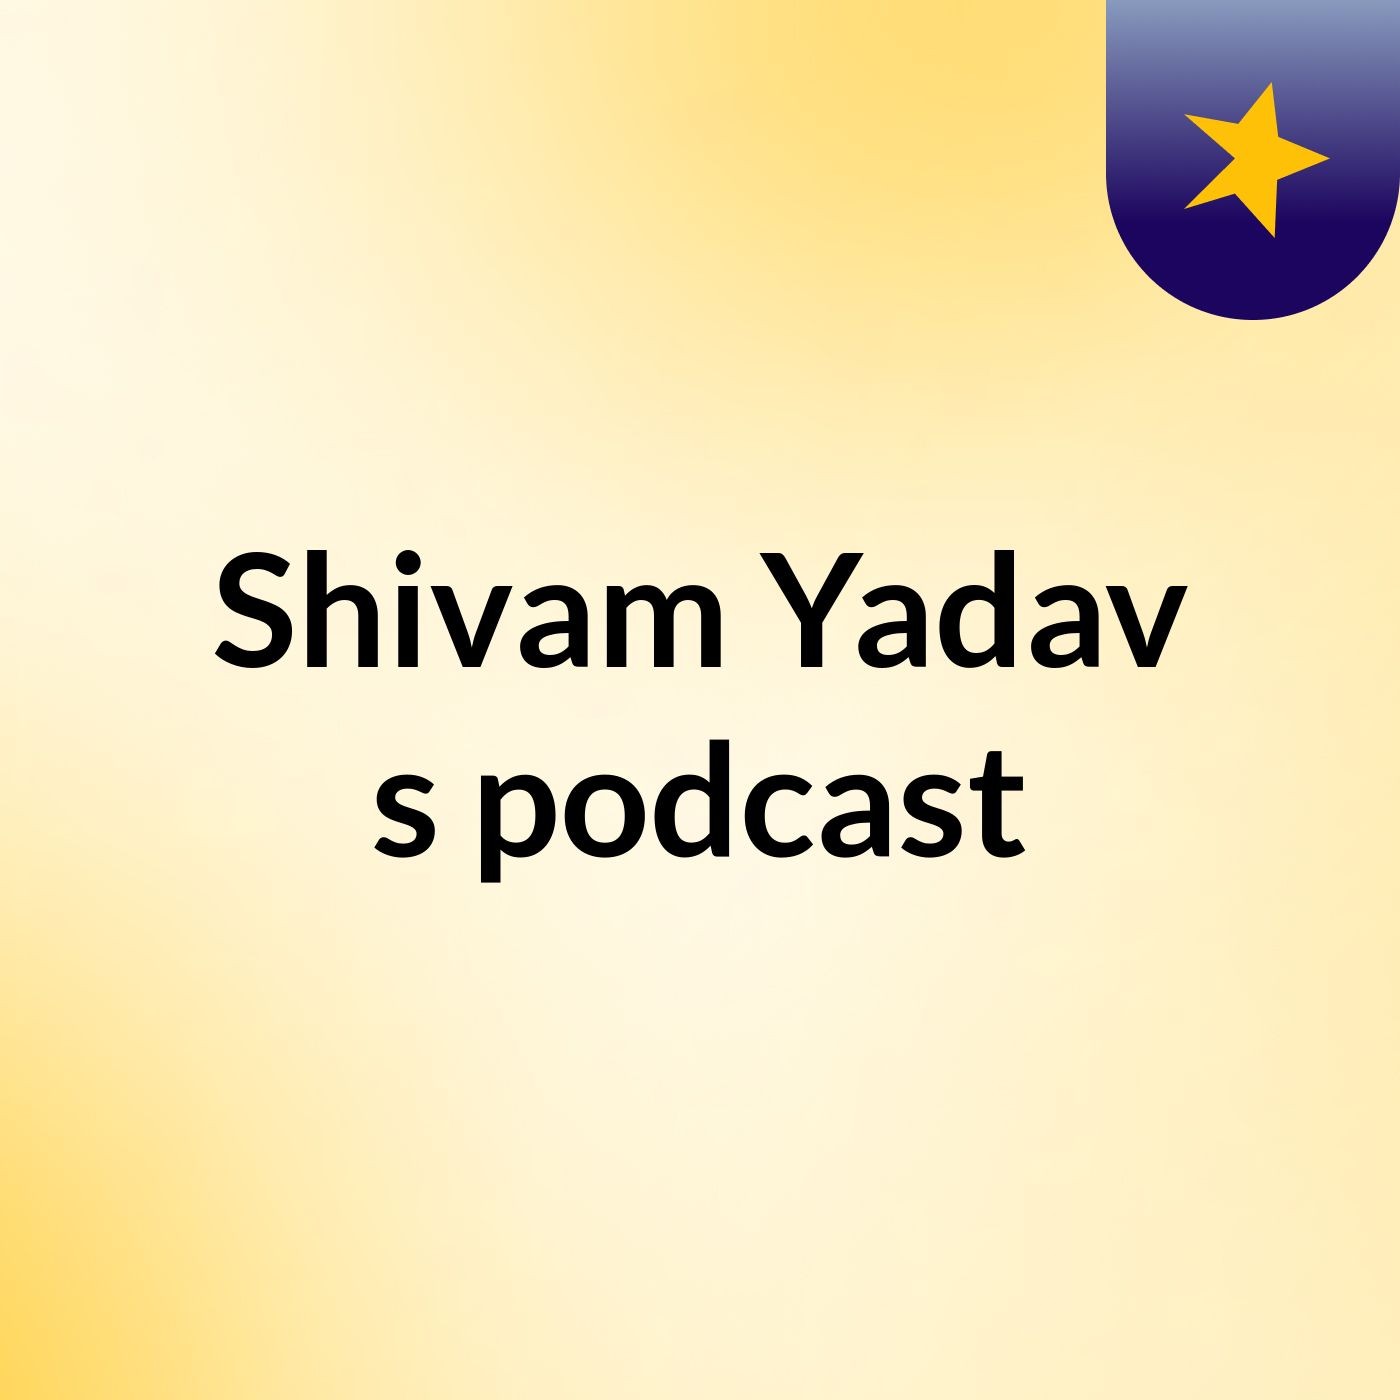 Episode 4 - Shivam Yadav's podcast